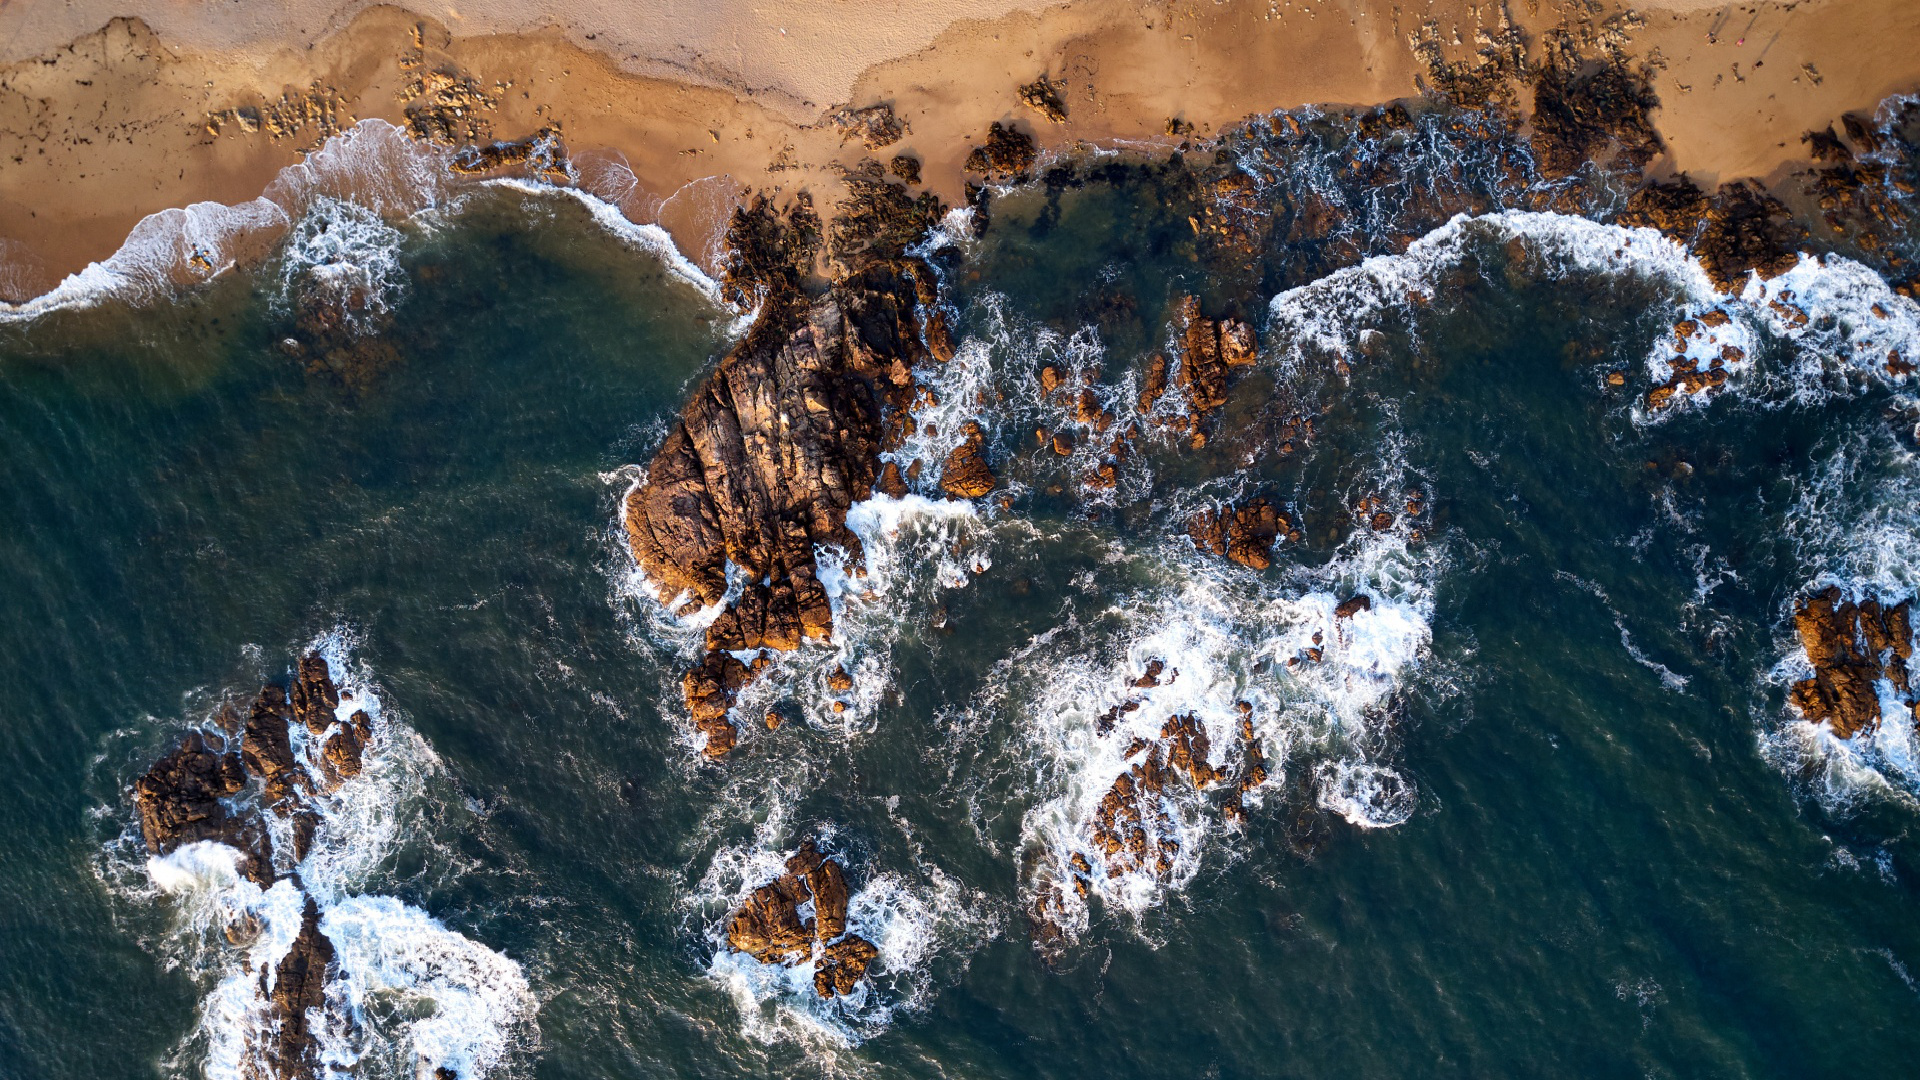 Atlantic Ocean, Free transparent image, Mewallpaper, Beach, 1920x1080 Full HD Desktop